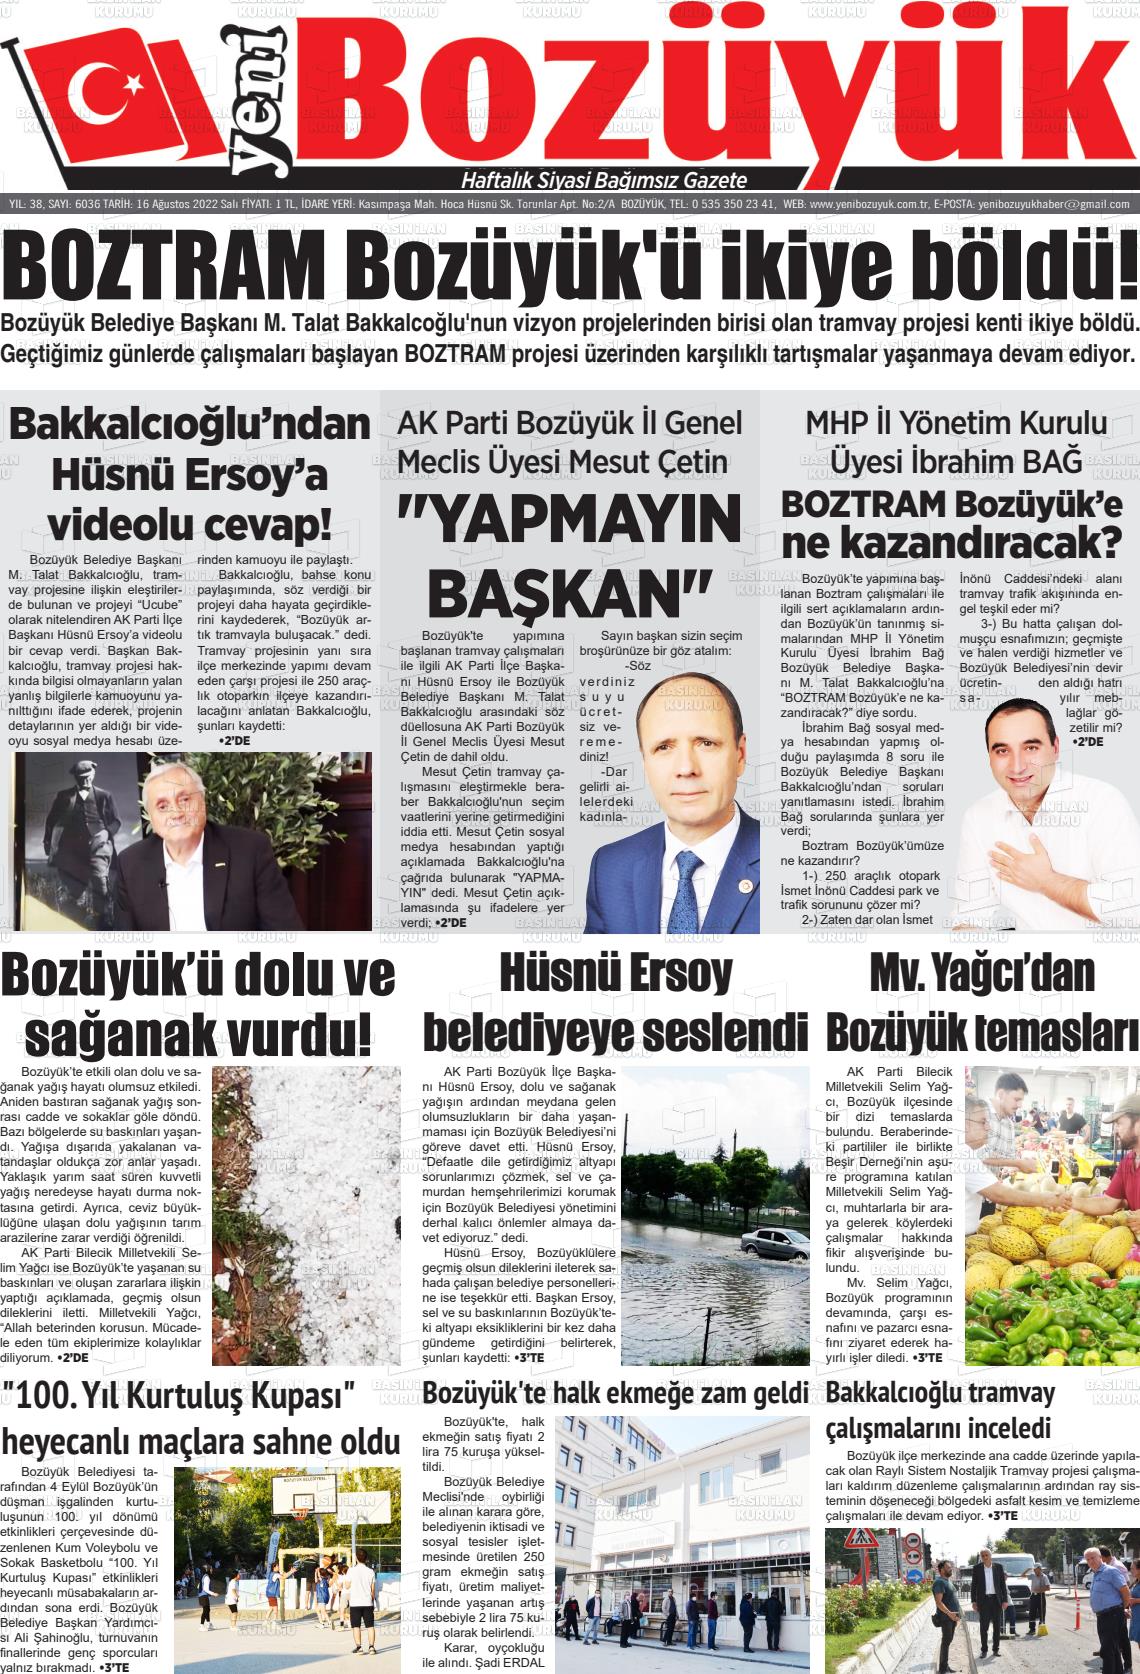 16 Ağustos 2022 Yeni Bozüyük Gazete Manşeti